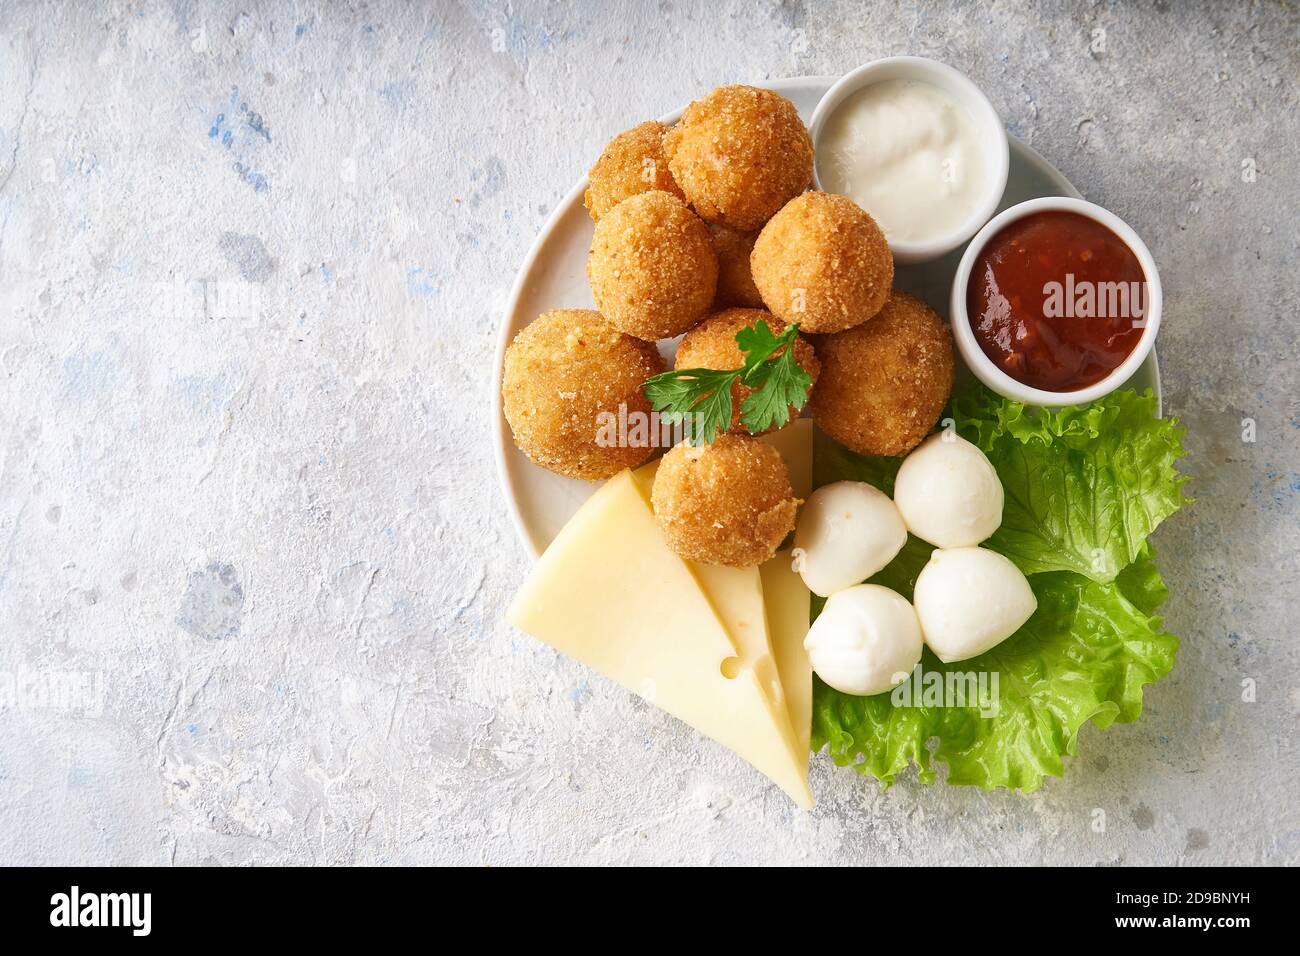 boulettes de fromage, apéritif aux herbes et sauces dans une assiette sur une table grise Banque D'Images